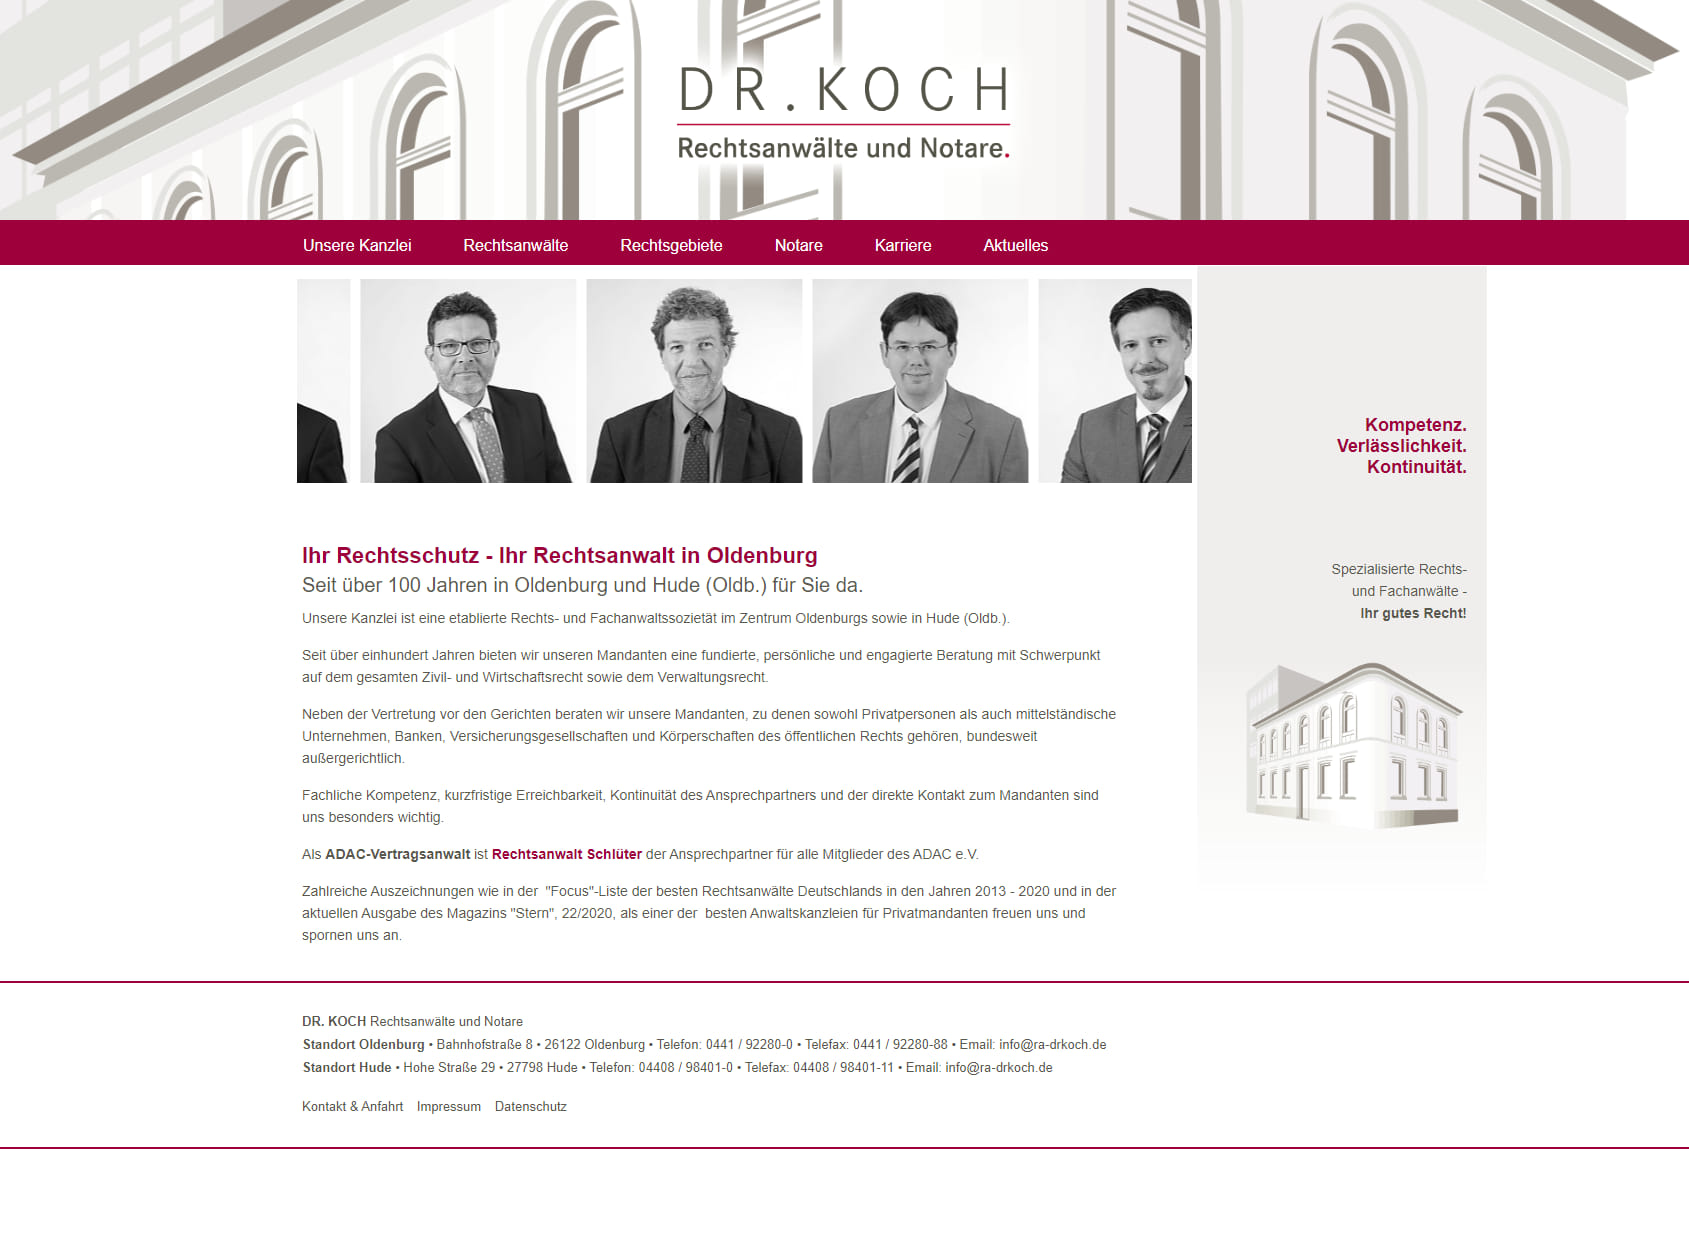 DR. KOCH Rechtsanwälte und Notare.